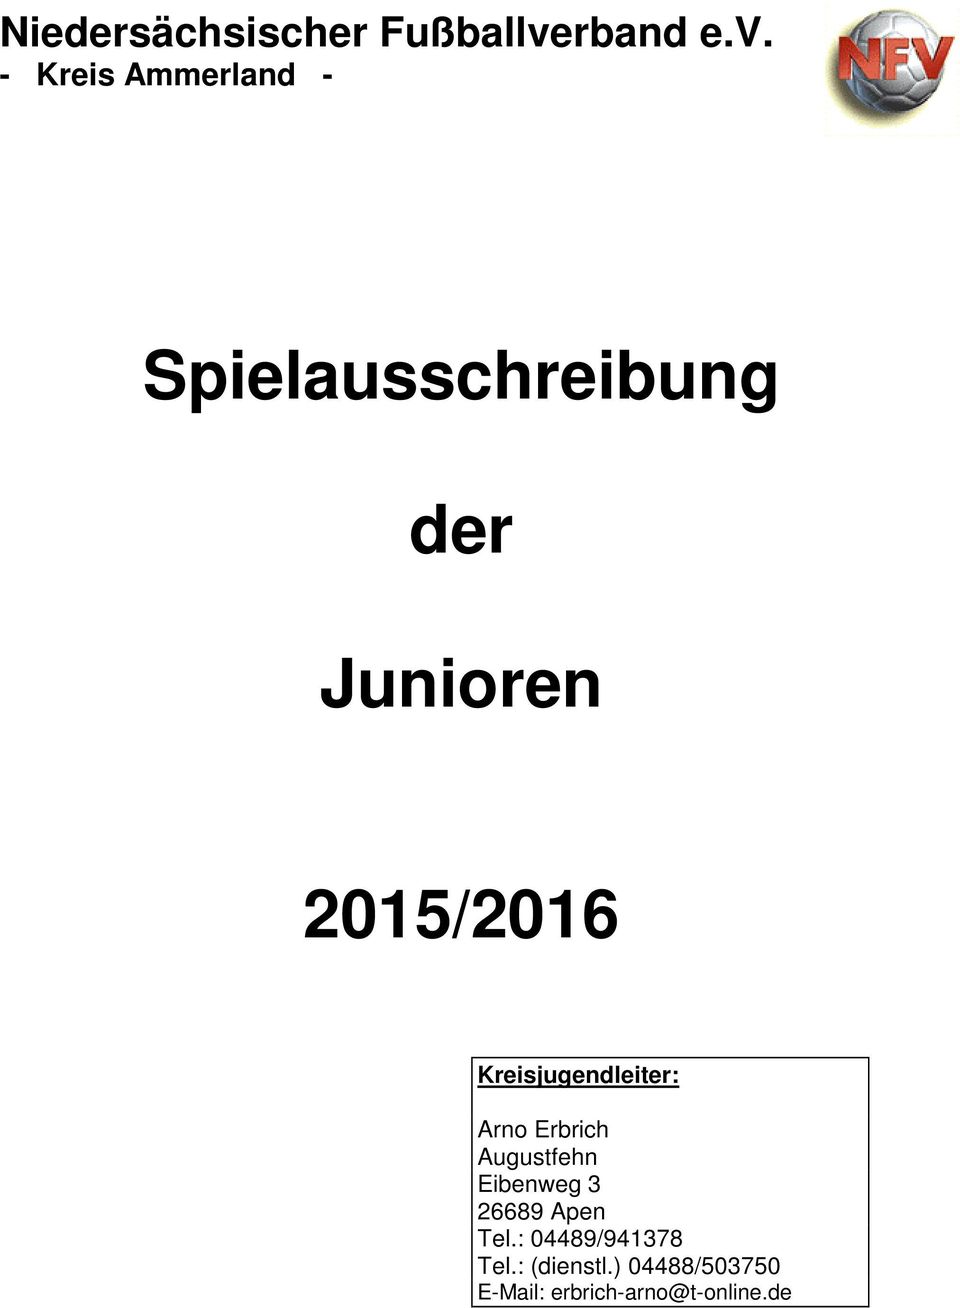 - Kreis Ammerland - Spielausschreibung der Junioren 2015/2016